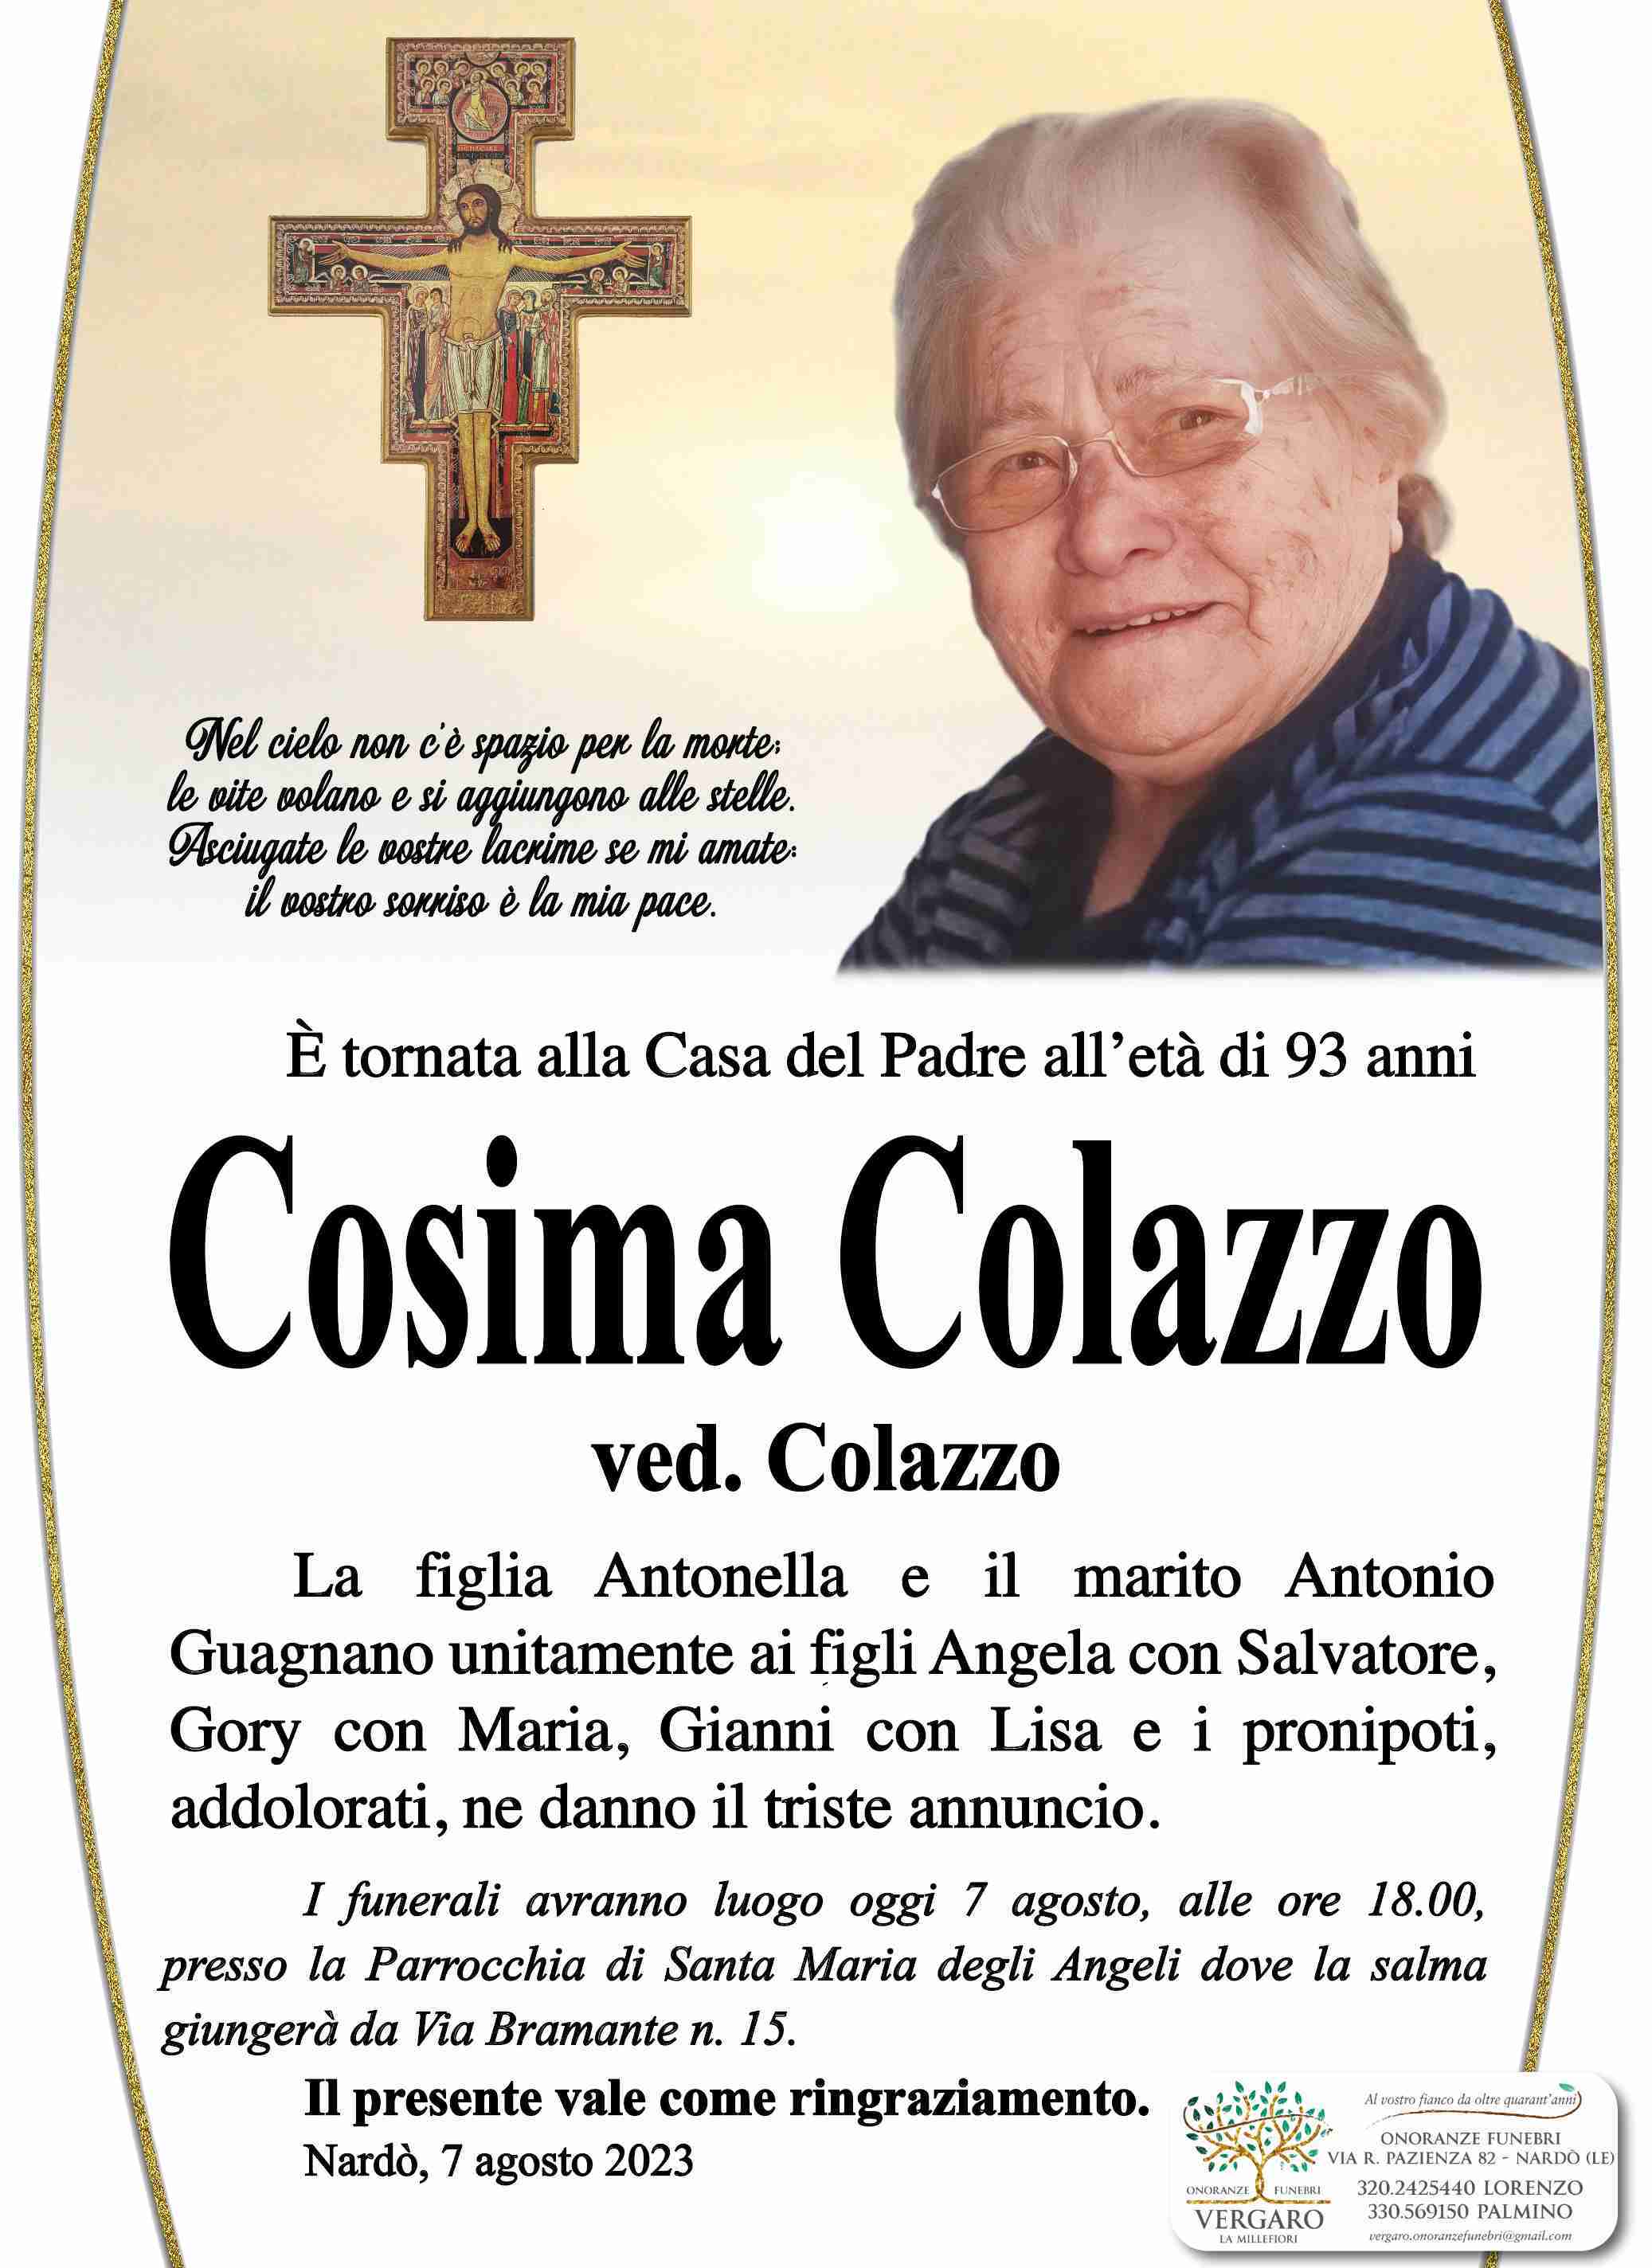 Cosima Colazzo